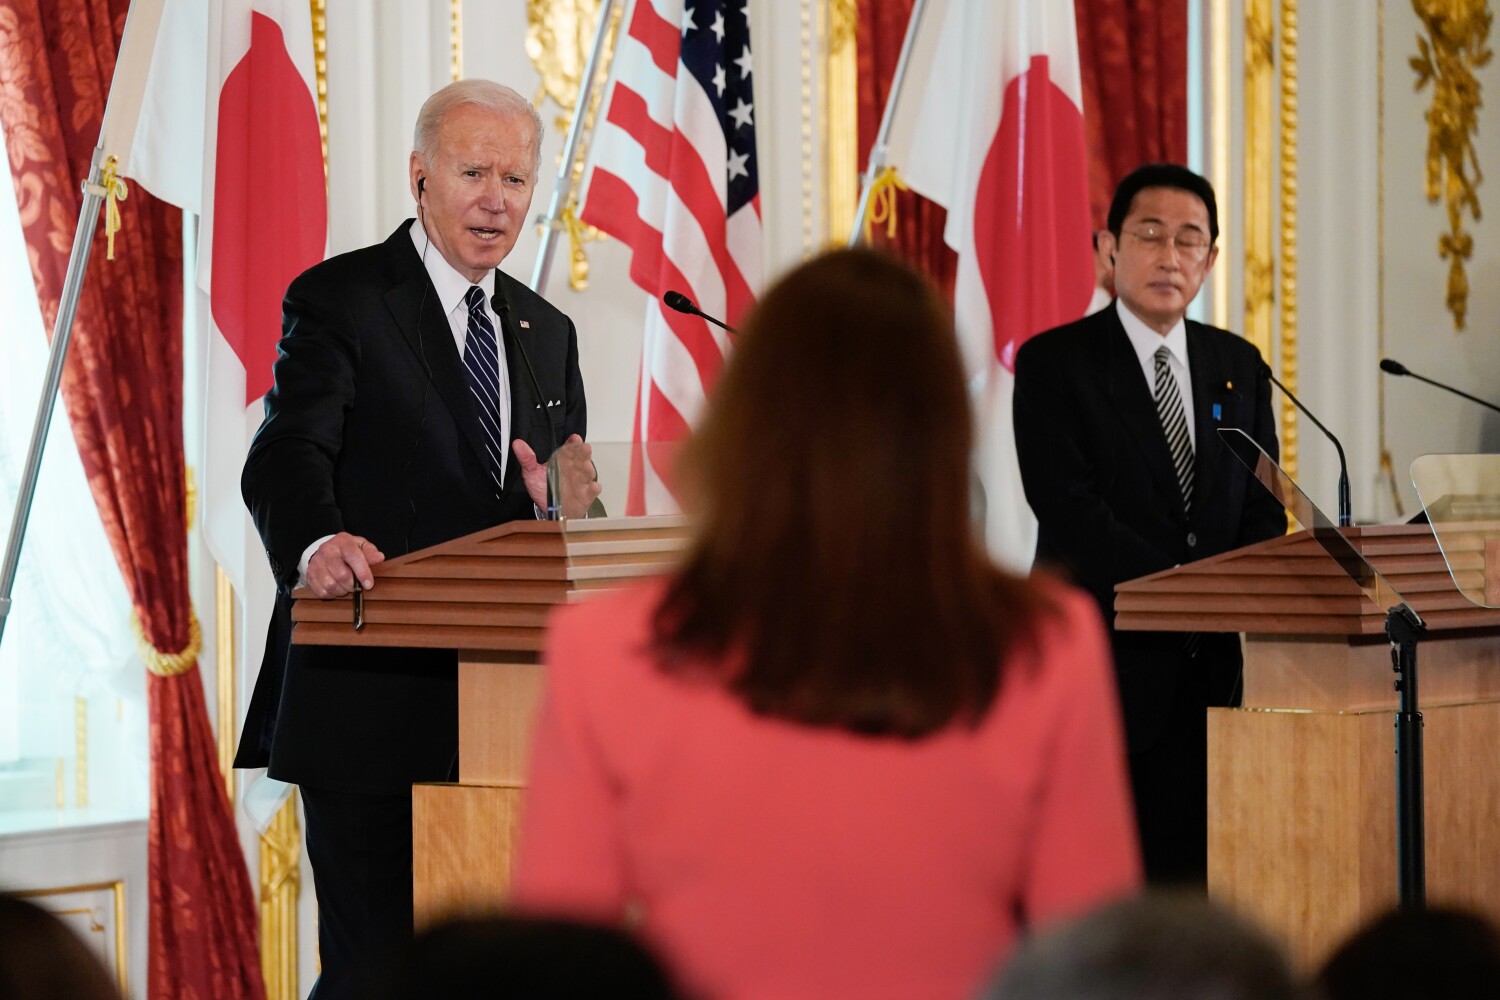 Çin'i Tayvan konusunda caydırmak için Biden'ın güvence vermesi gerekiyor